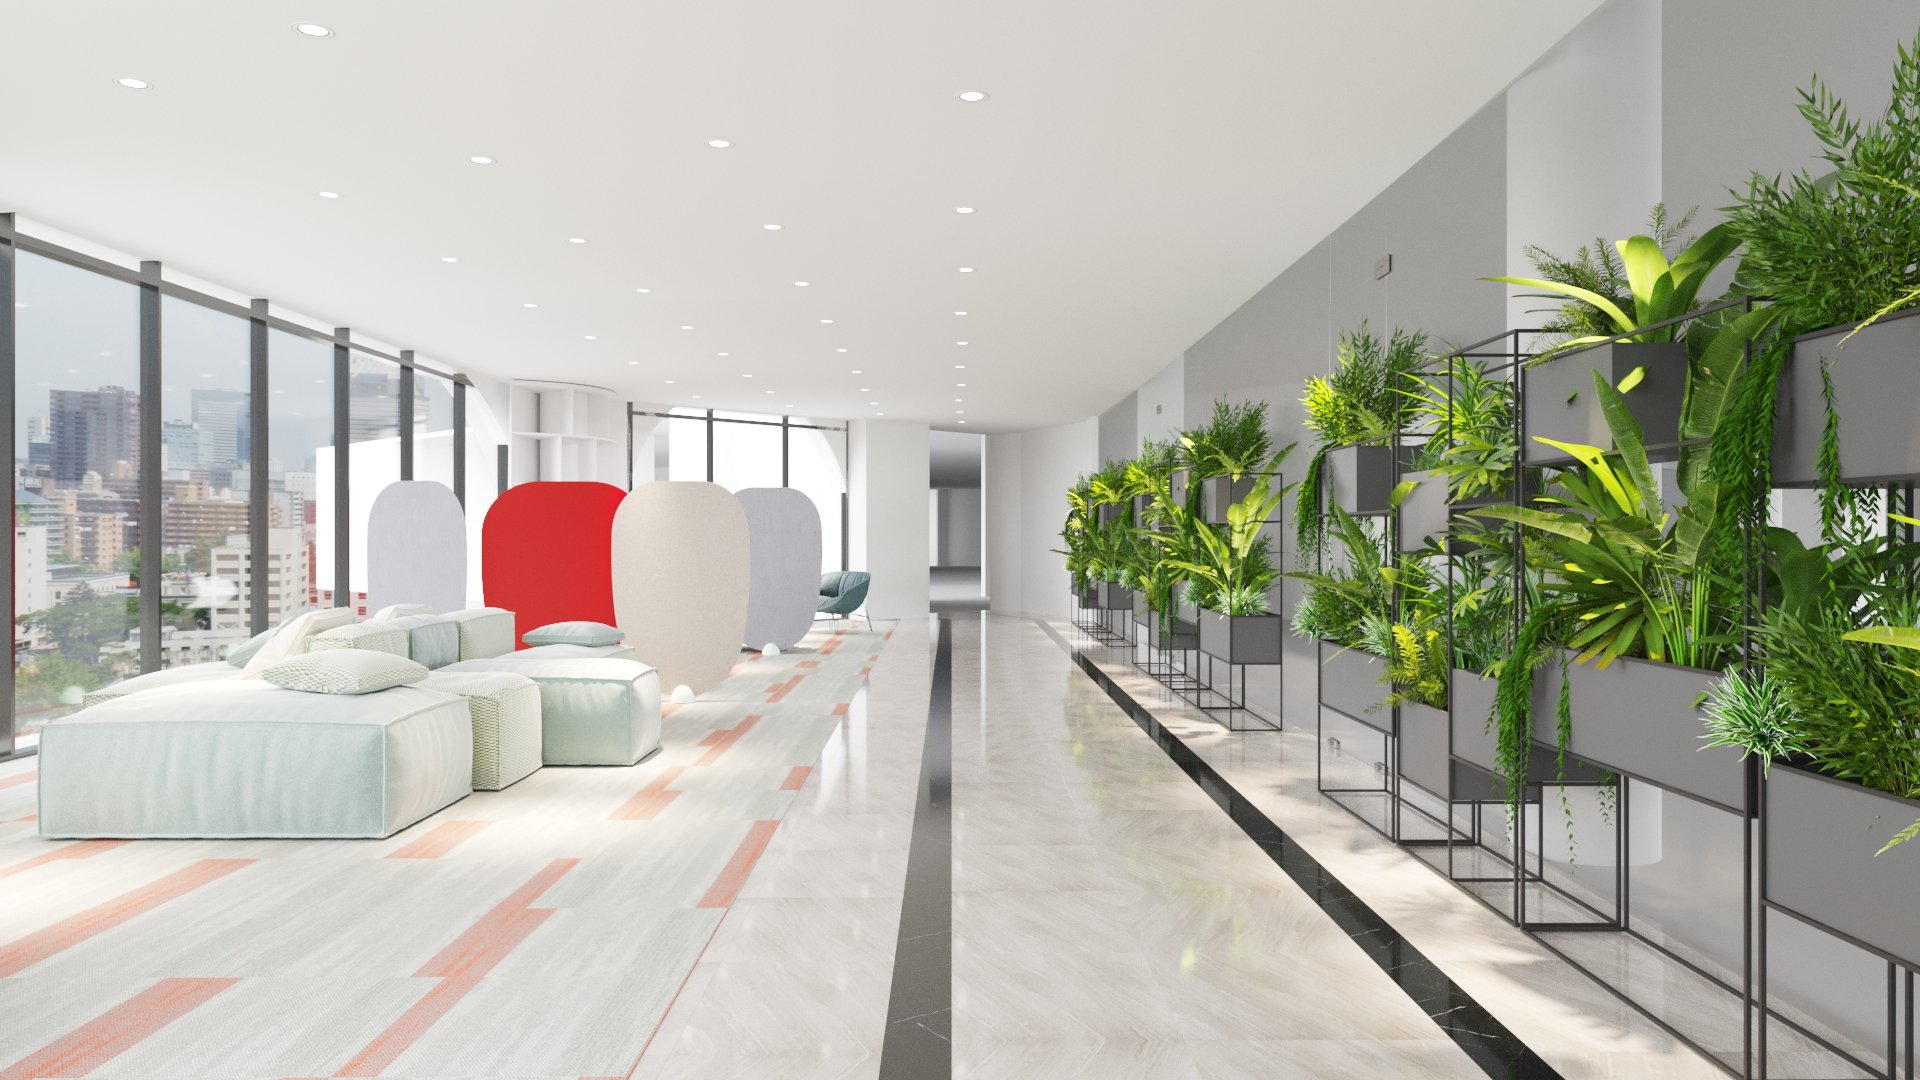 Sử dụng tường màu trung tính kết hợp với cây xanh trong văn phòng Vietel - Thiết kế bởi ICADVietnam.